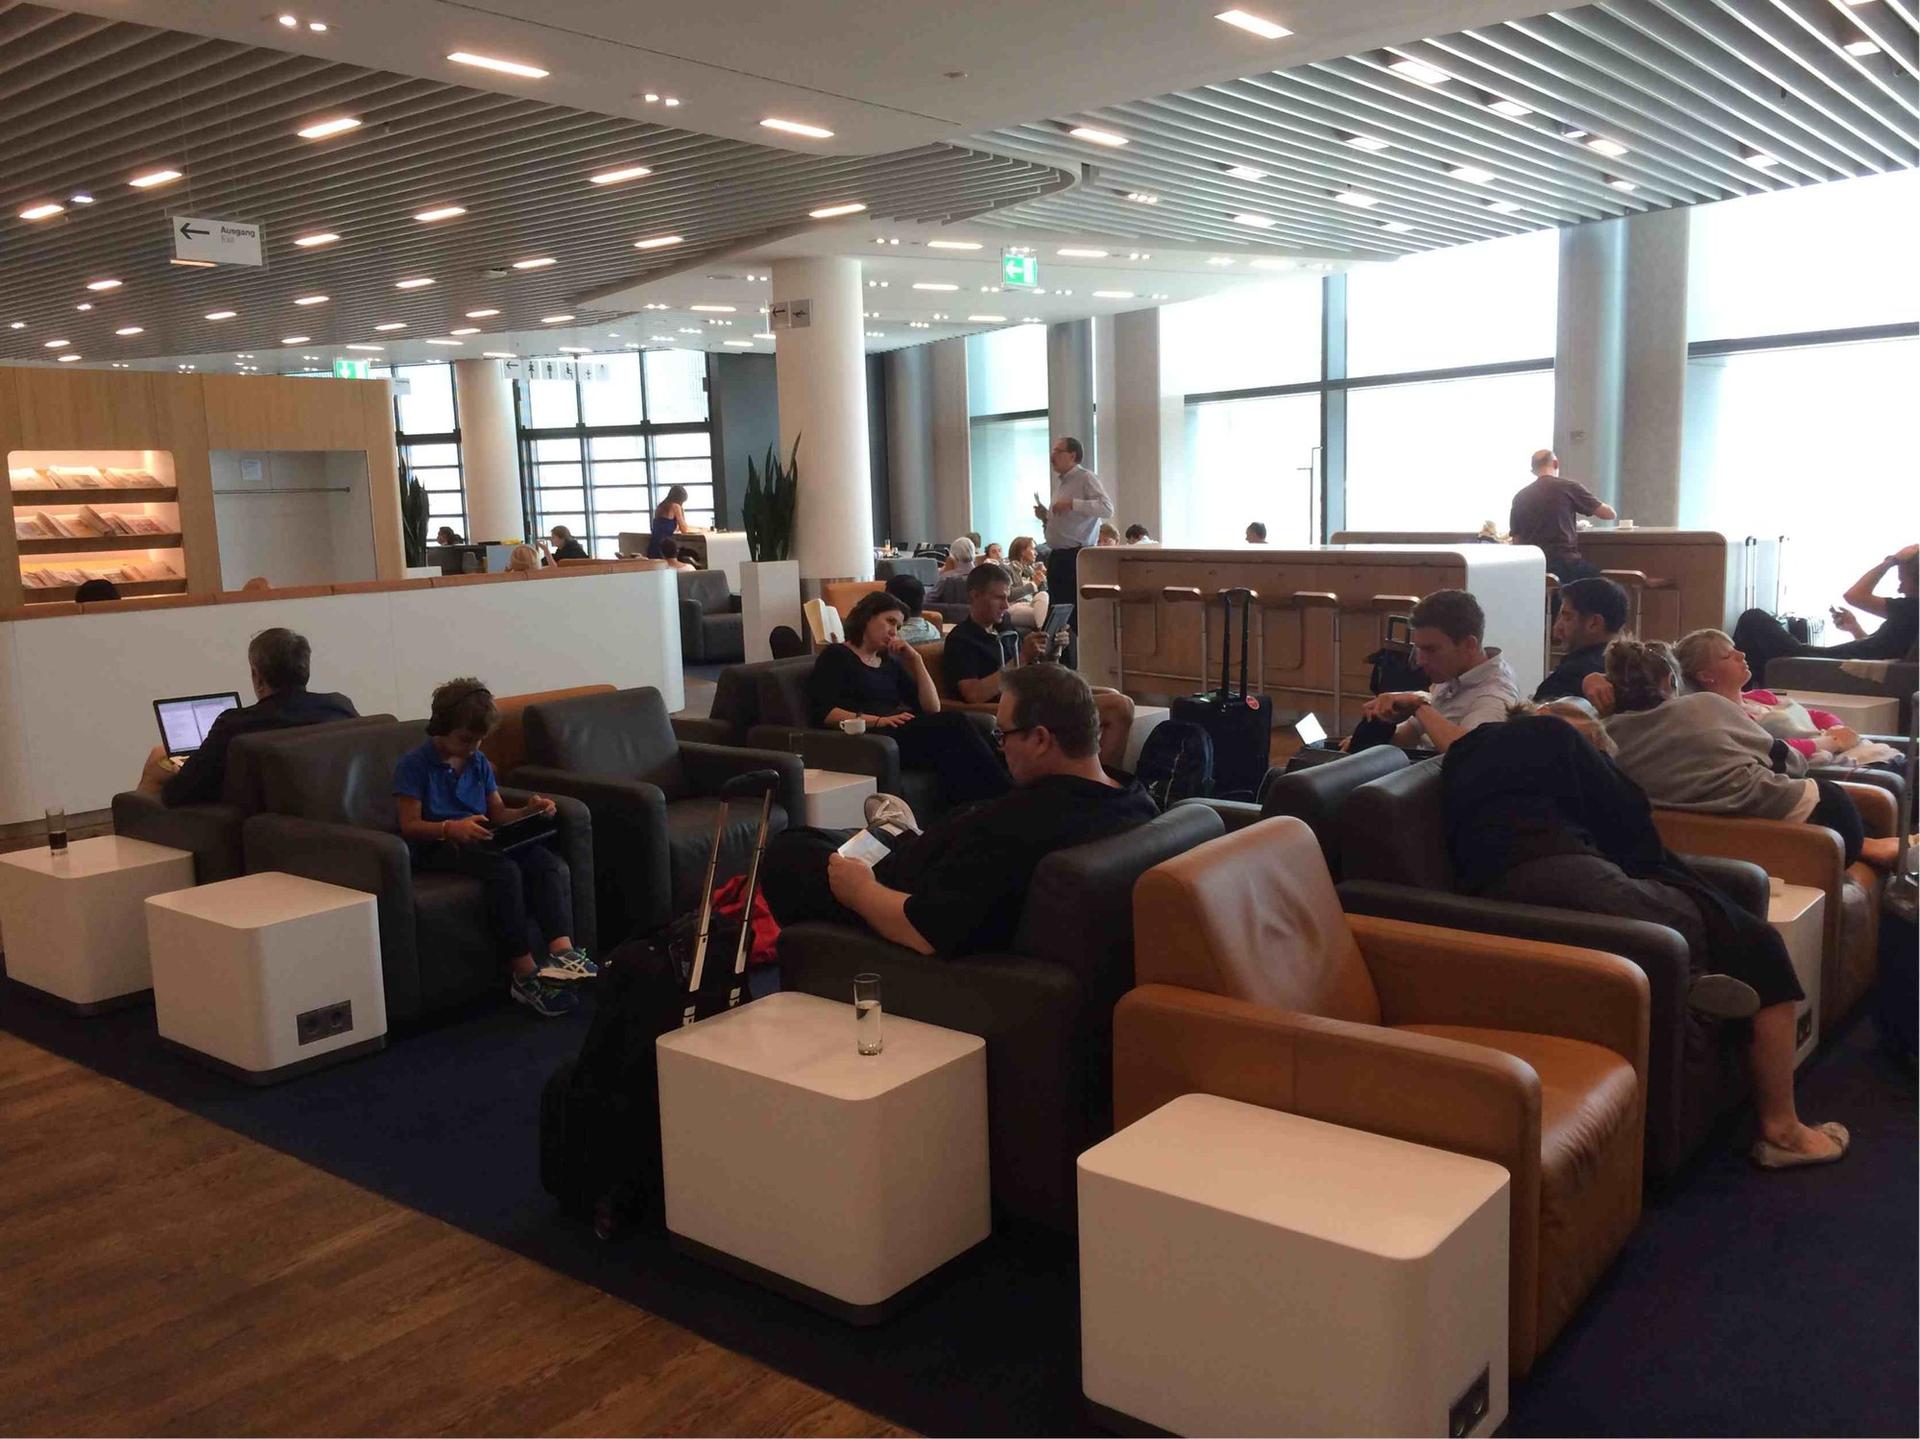 Lufthansa Business Lounge (Schengen, Gate A13) image 6 of 13